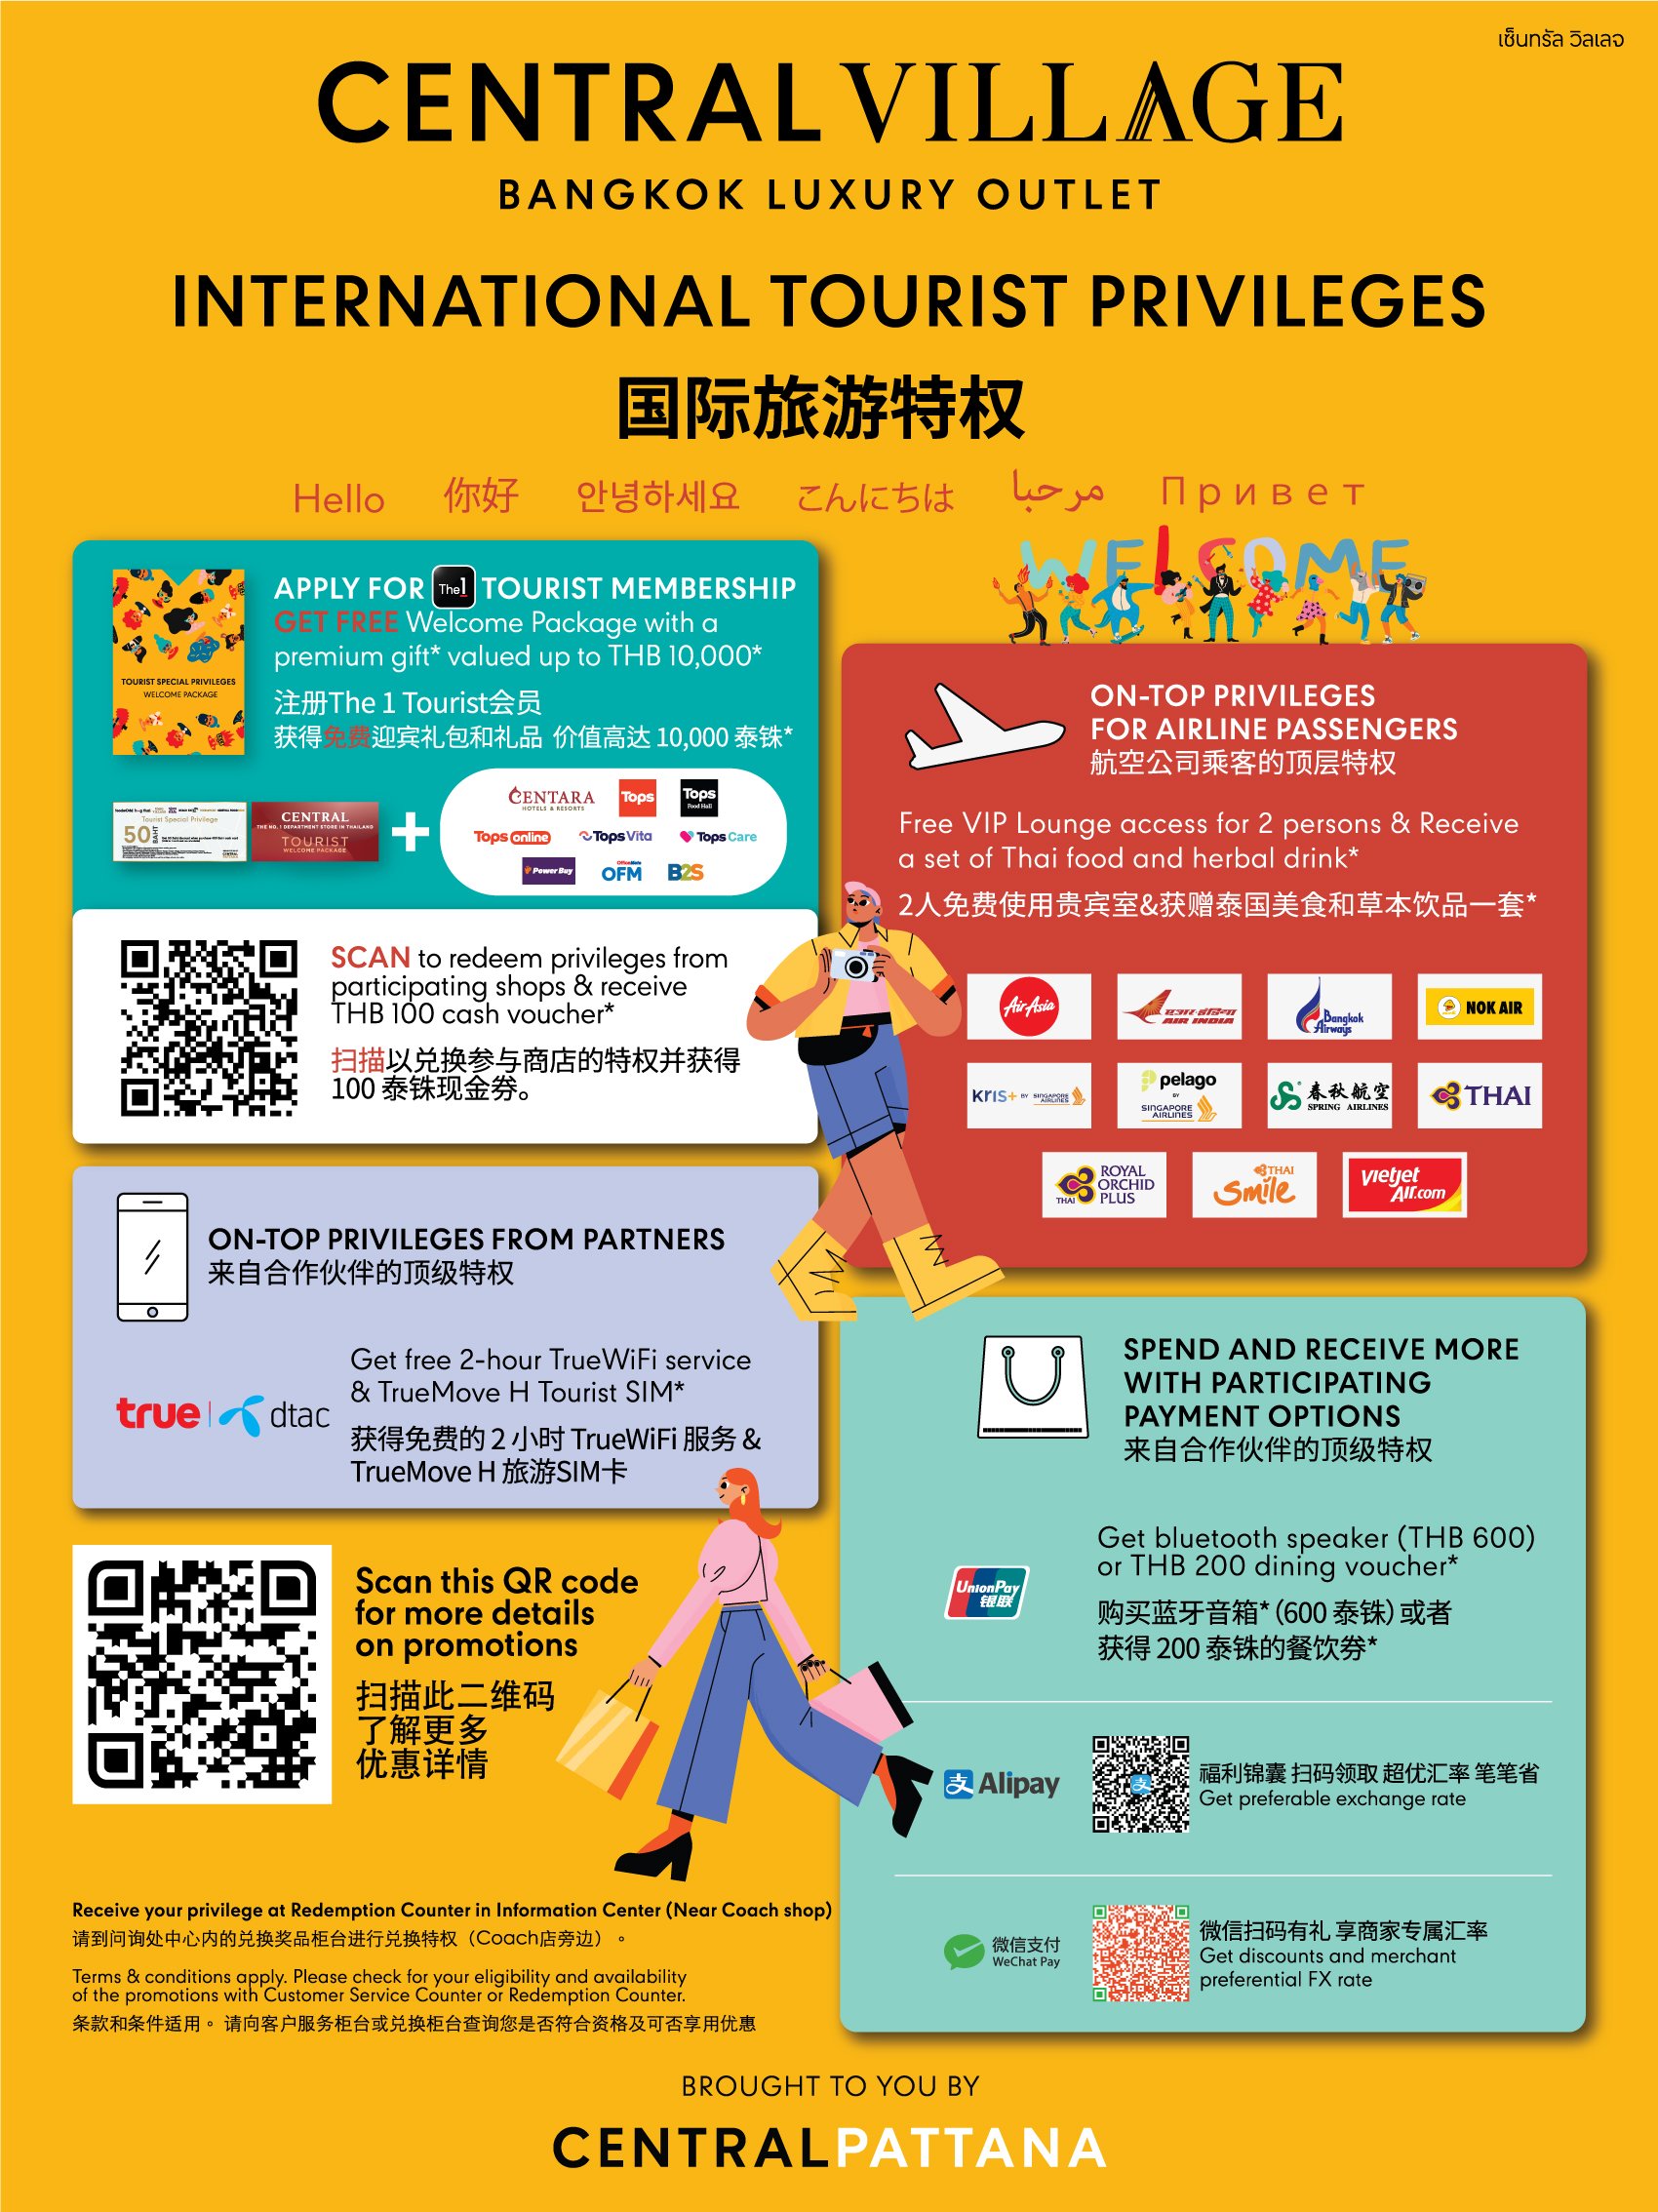 INTERNATIONAL TOURIST PRIVILEGES